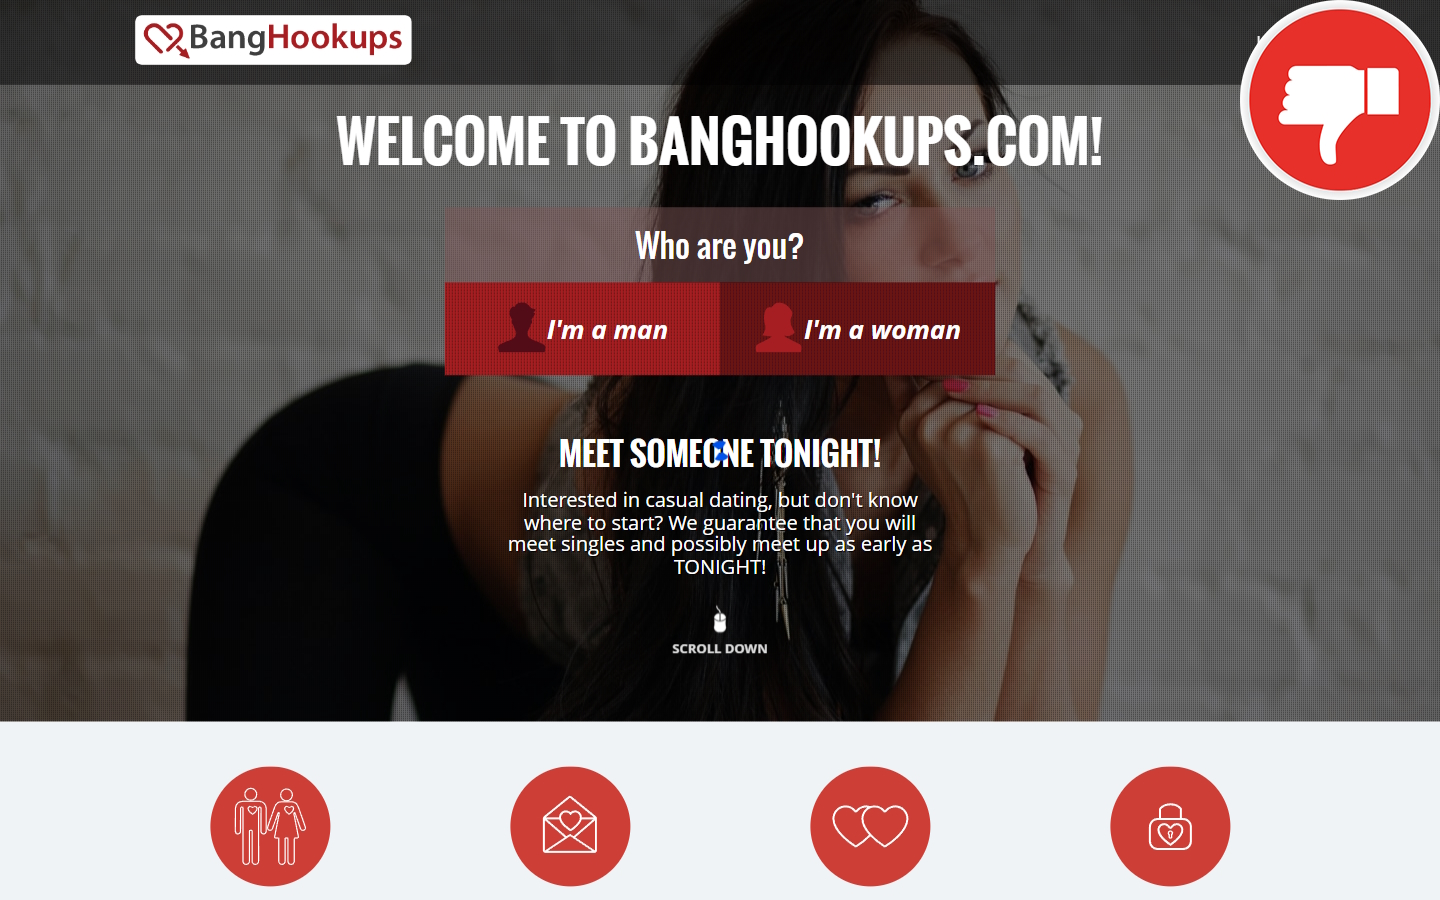 Review BangHookups.com Scam